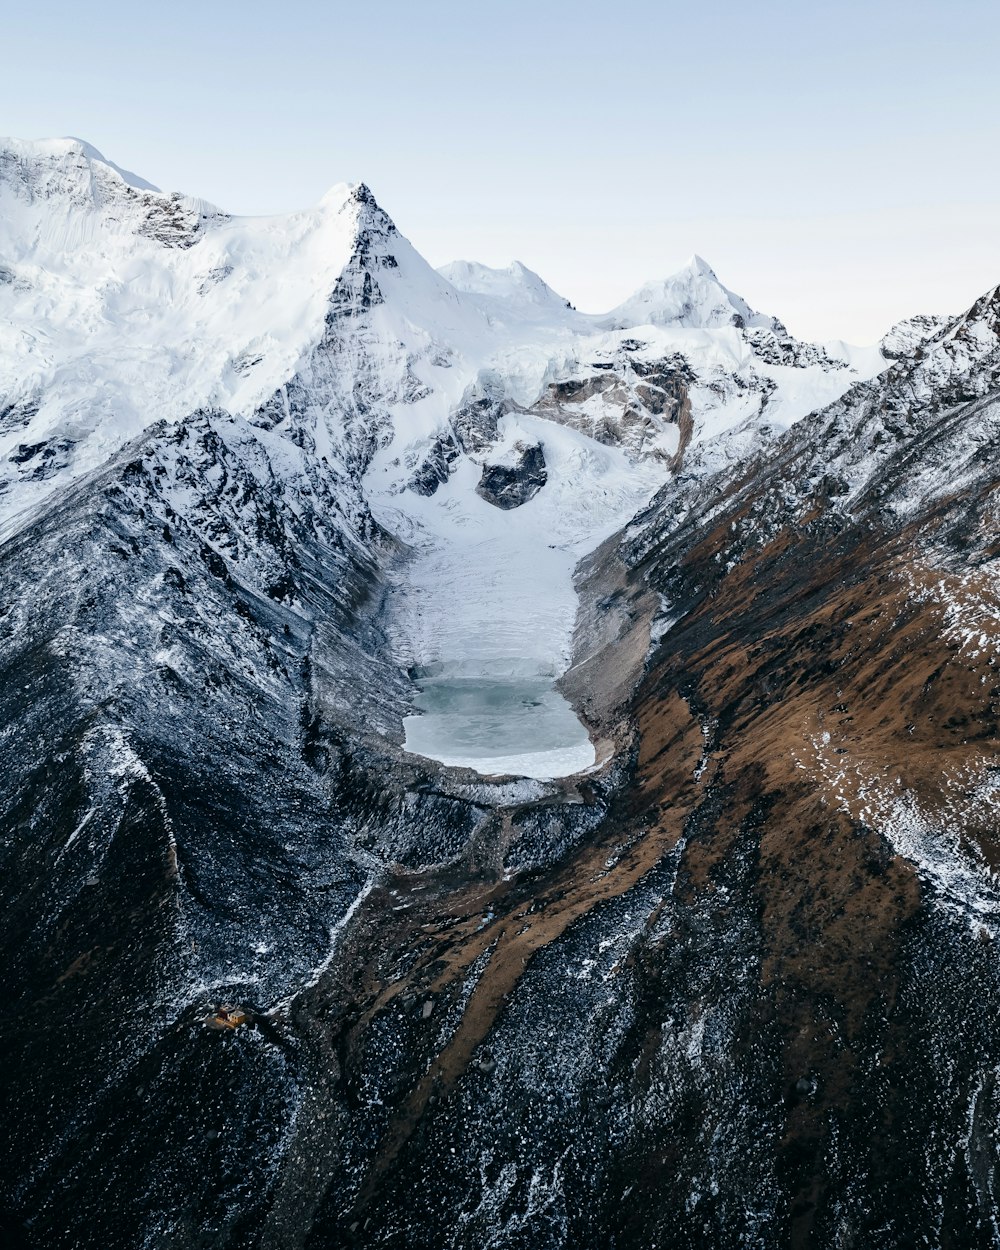 Une montagne enneigée avec un lac au milieu